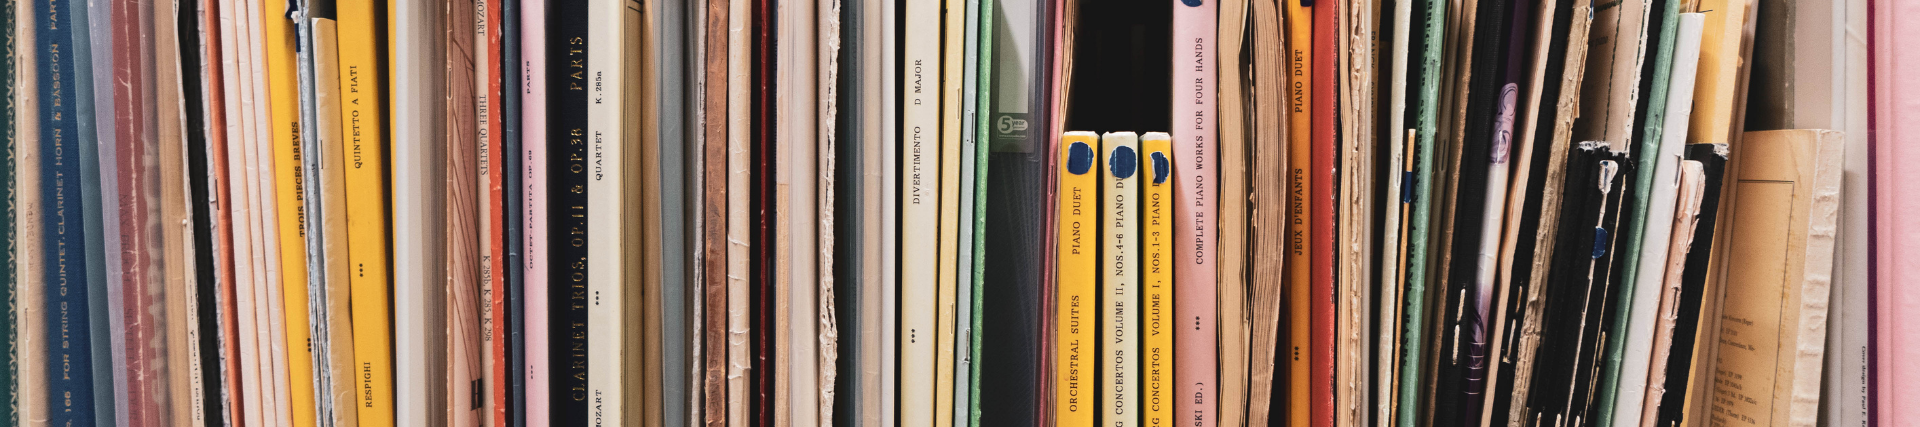 A shelf of musical scores